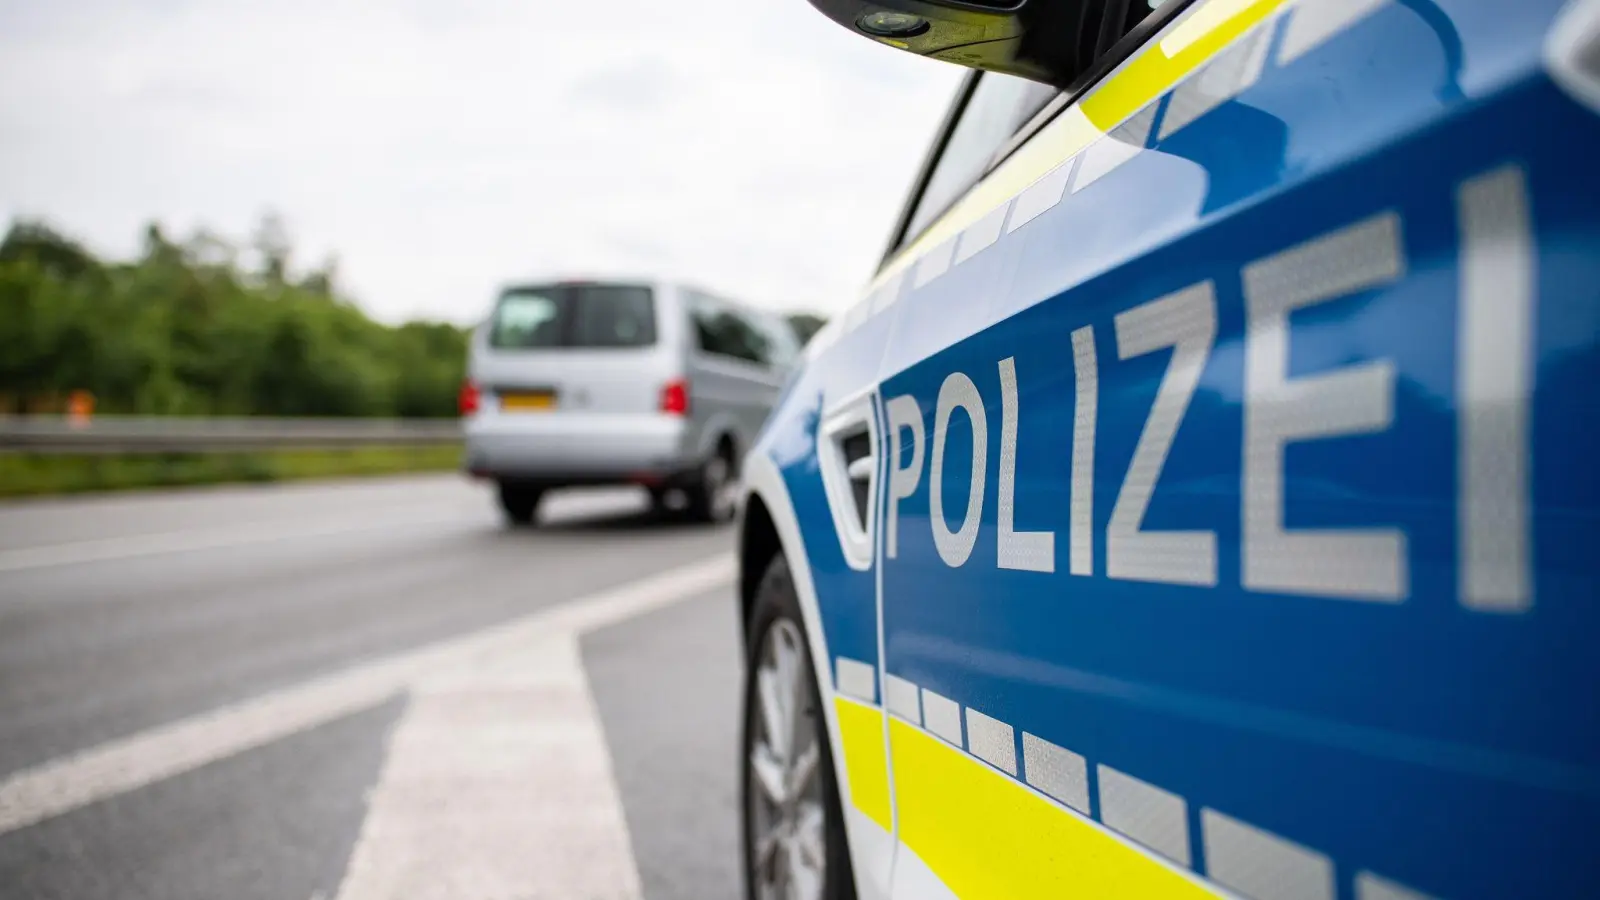 Die Polizei stoppte einen VW Golf, dessen Fahrer eine gefährliche Spritztour durch den Landkreis Neustadt/Aisch-Bad Windsheim unternommen haben soll. (Symbolbild: Guido Kirchner/dpa)